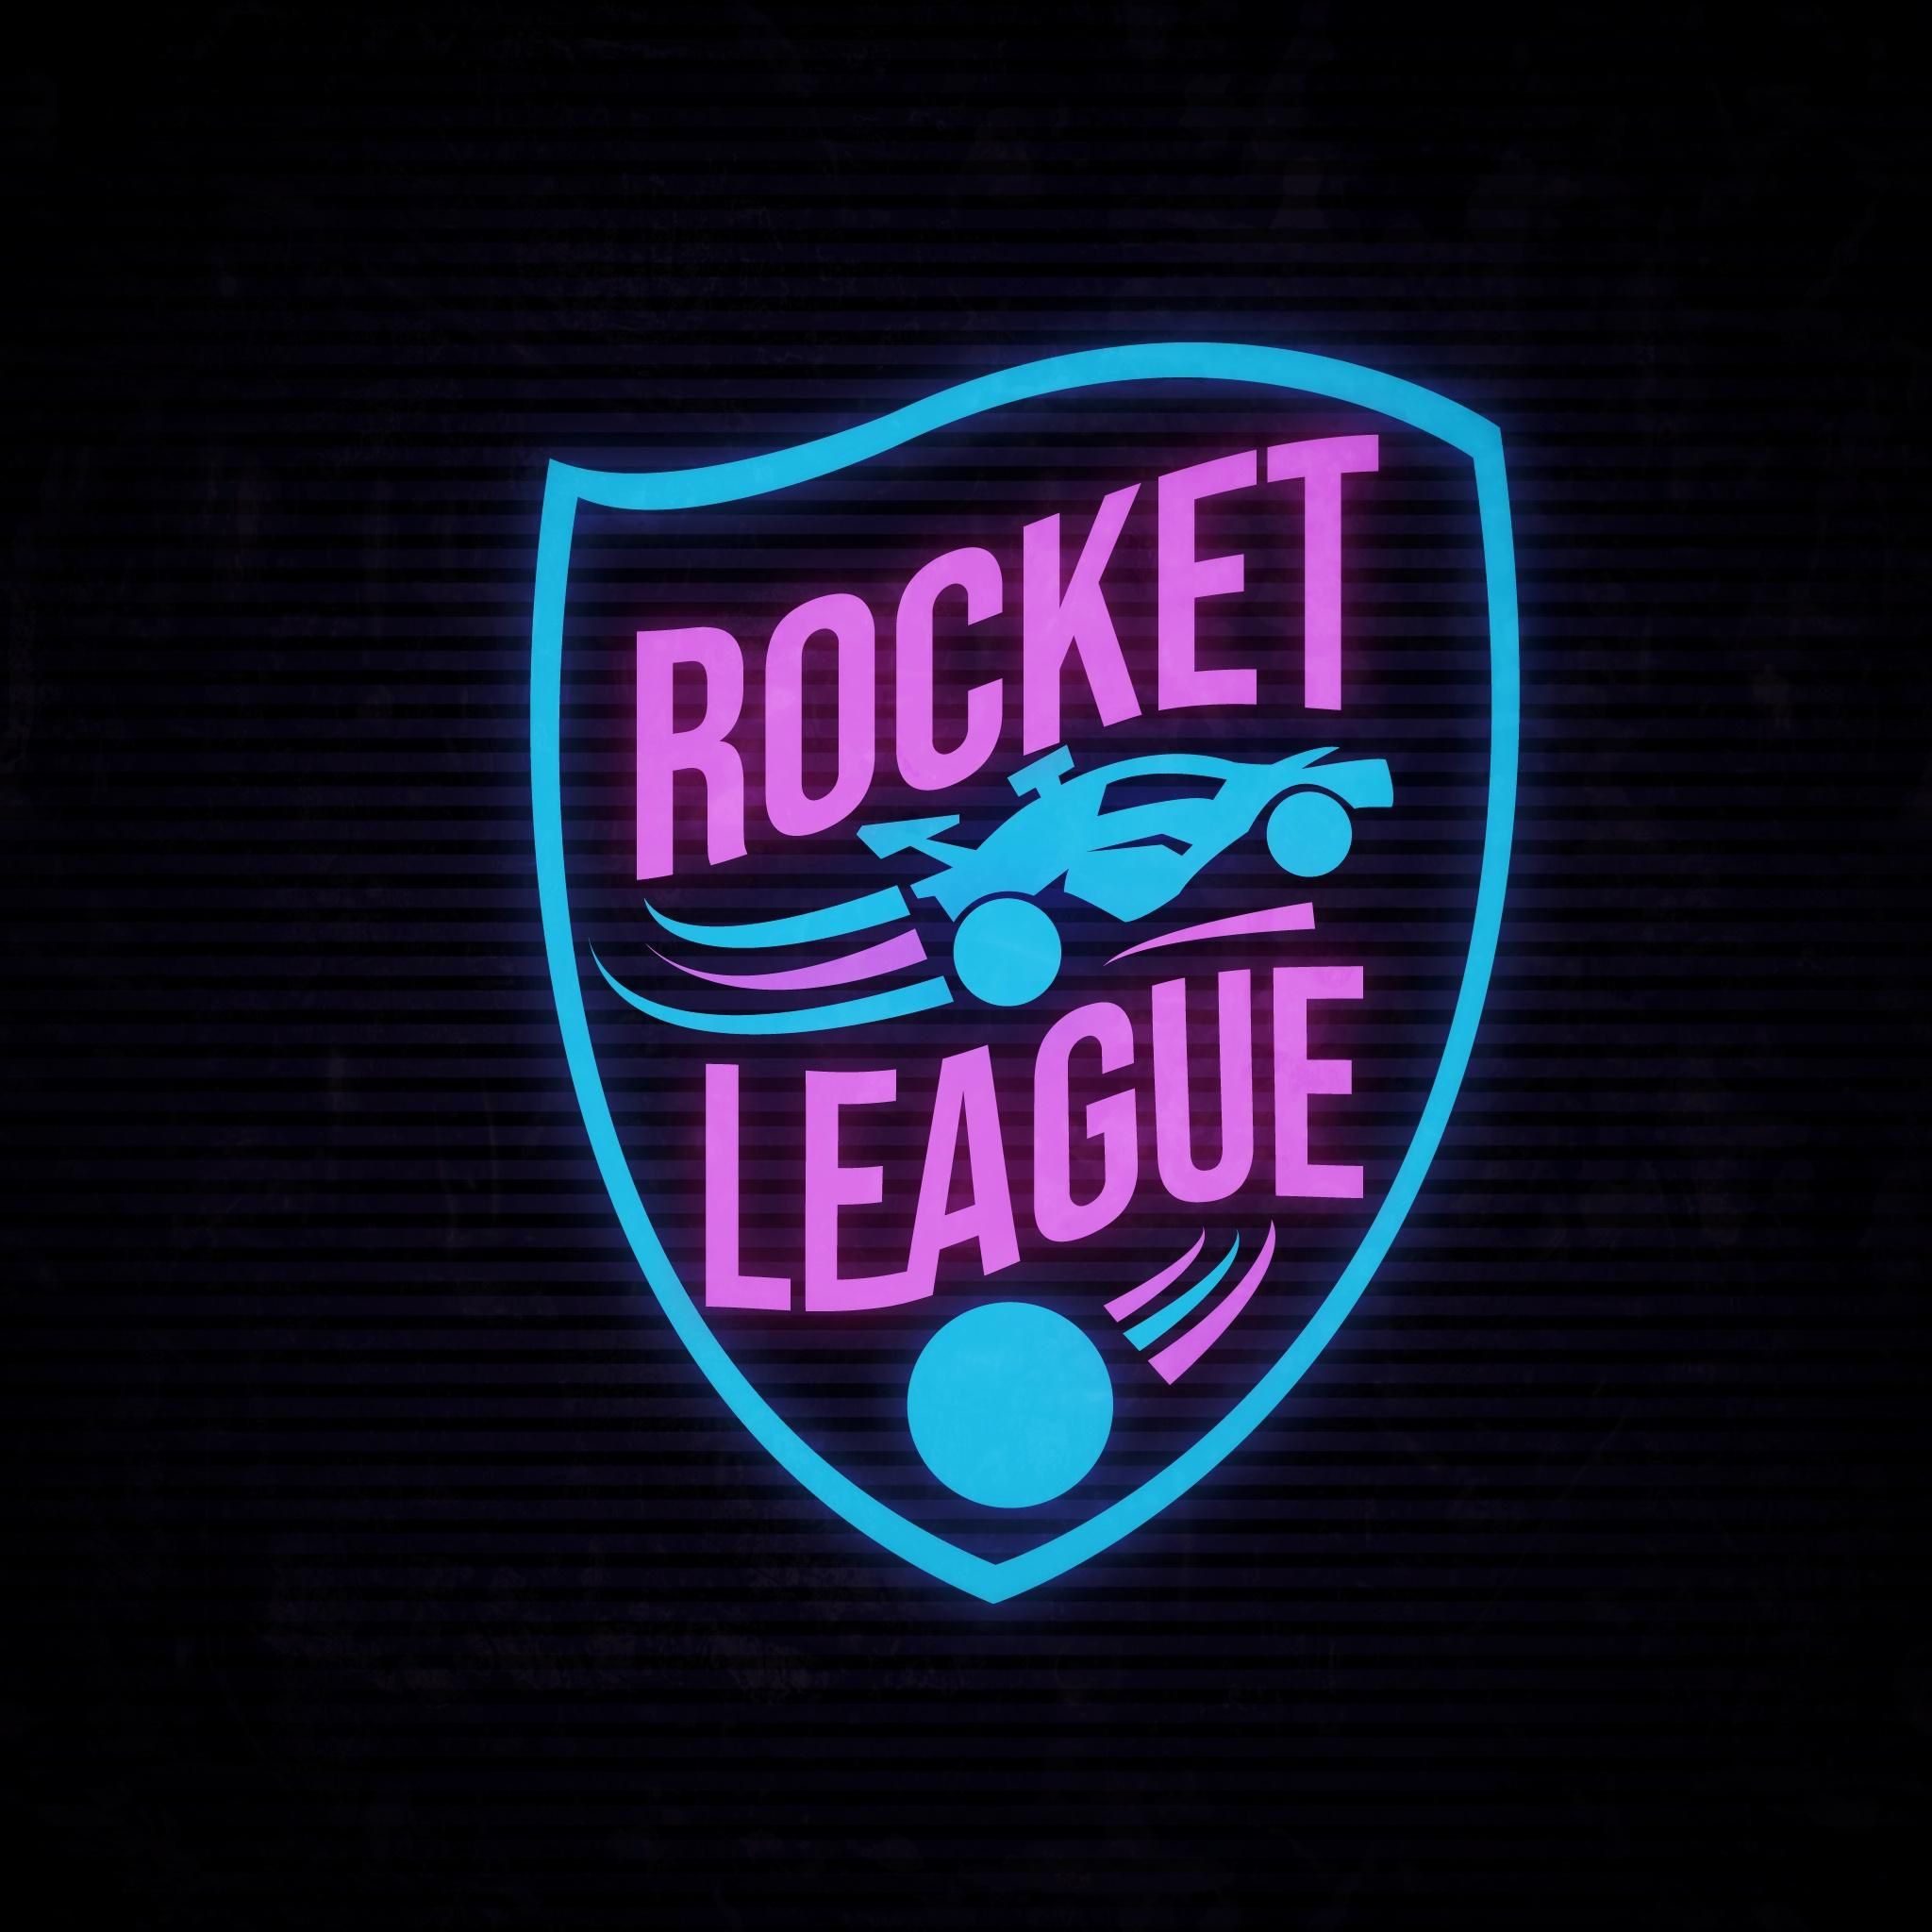 Большой подкаст. «This is Rocket League!». Почему Rocket League не востребована в СНГ регионе? Часть 2